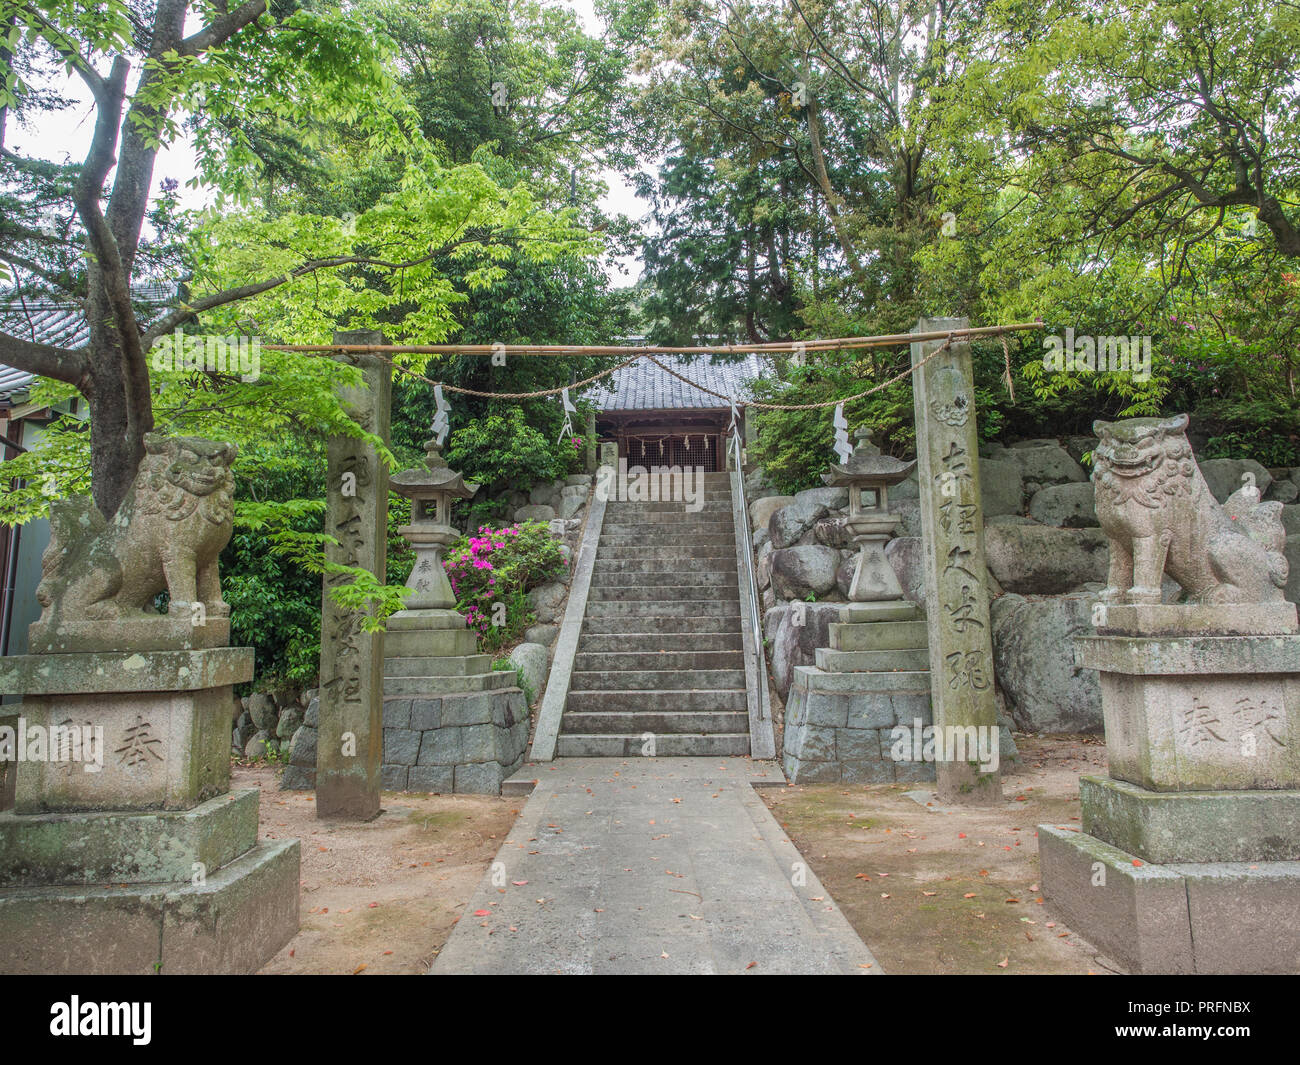 Entrance to shinto shrine next to Kokubunji temple 59, 88 temple pilgrimage, Ehime, Shikou, Japan Stock Photo